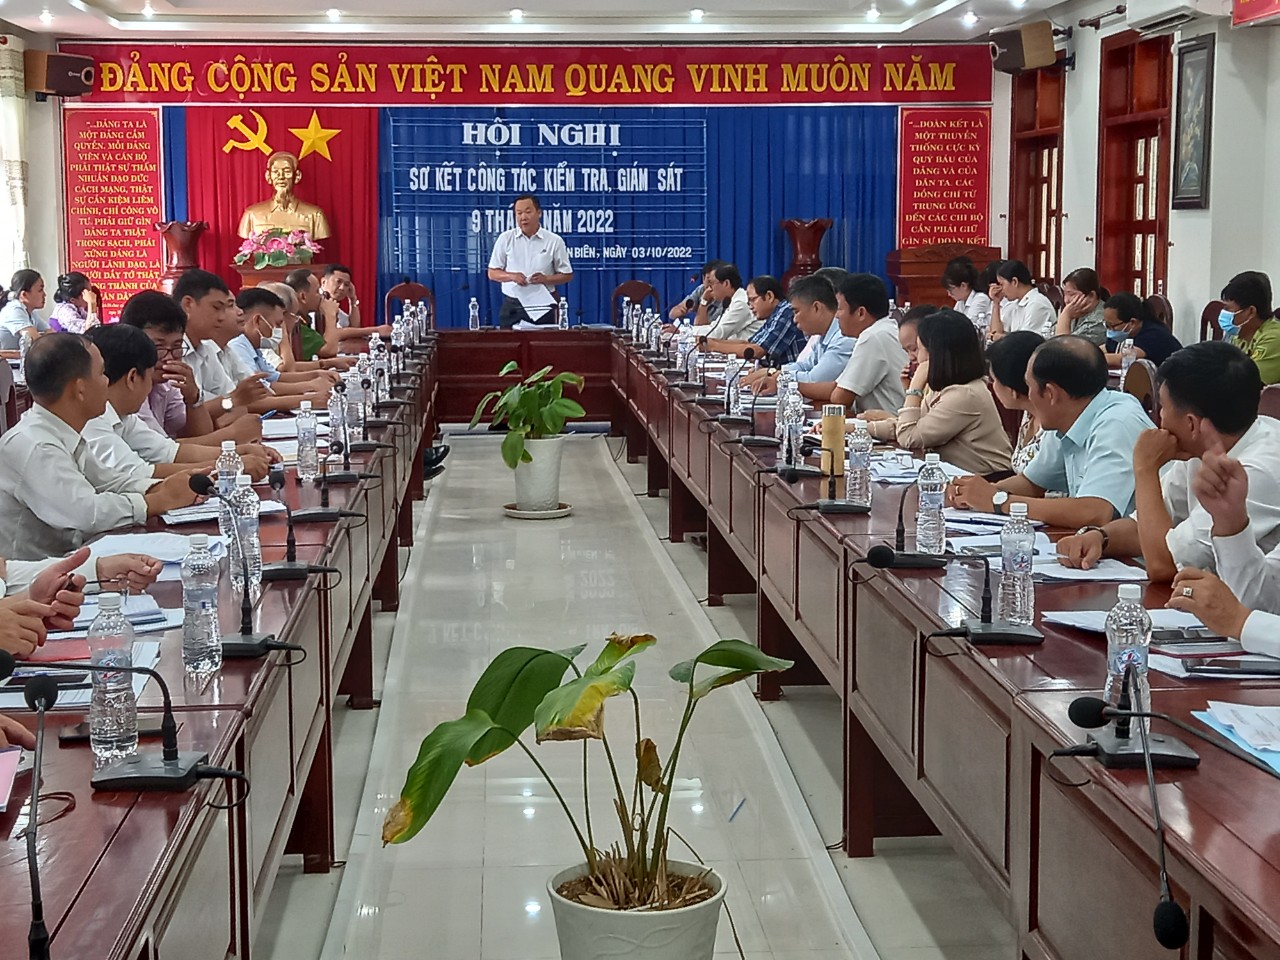 Tân Biên sơ kết công tác kiểm tra giám sát 9 tháng năm 2022